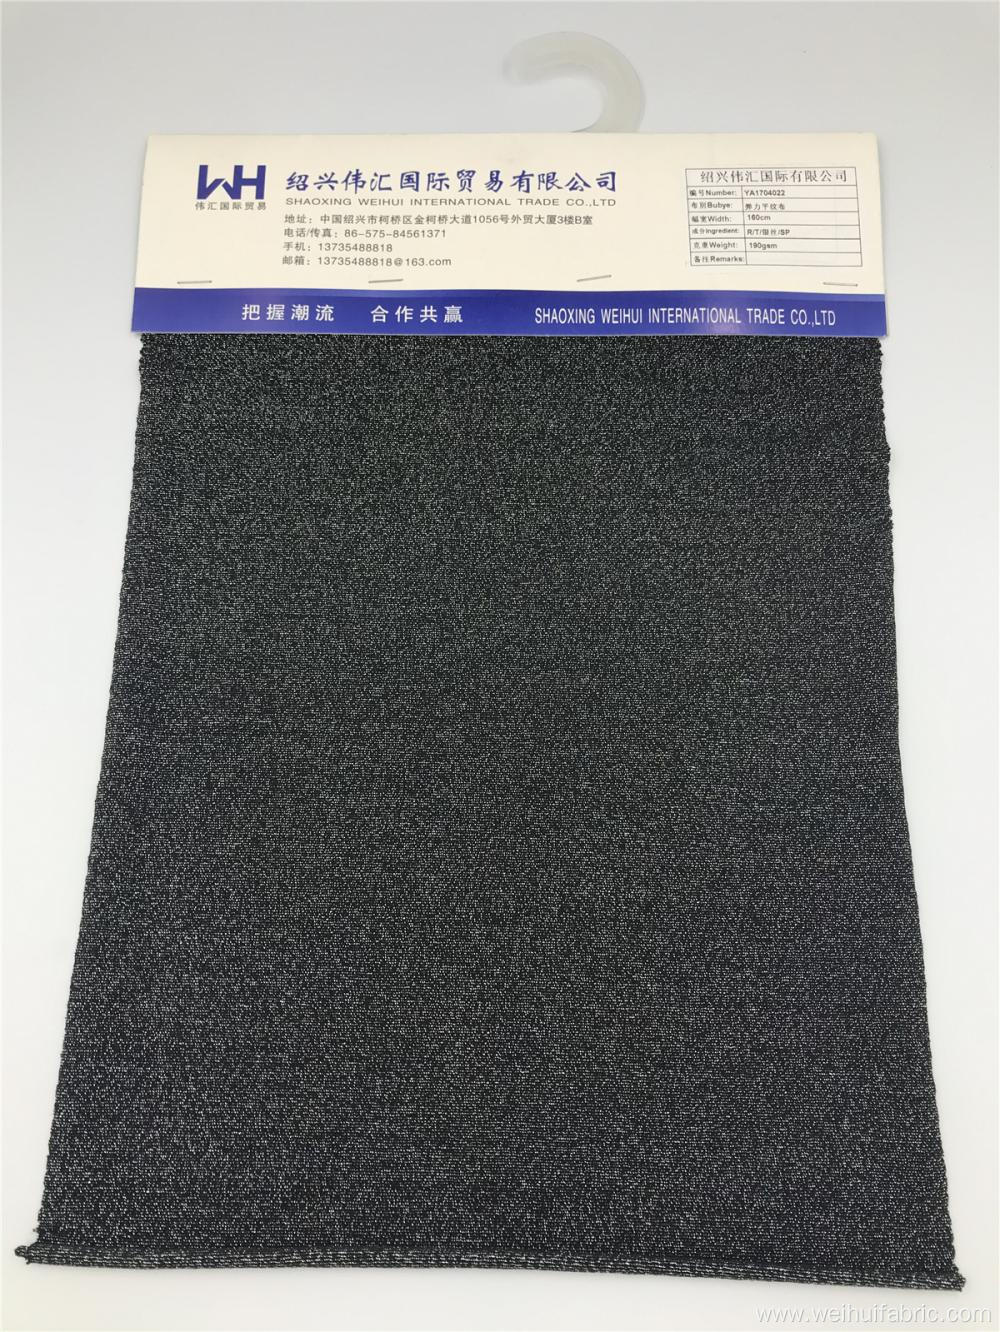 Wholesale Single Jersey Fabric R/T/L/SP Dark Color Fabrics